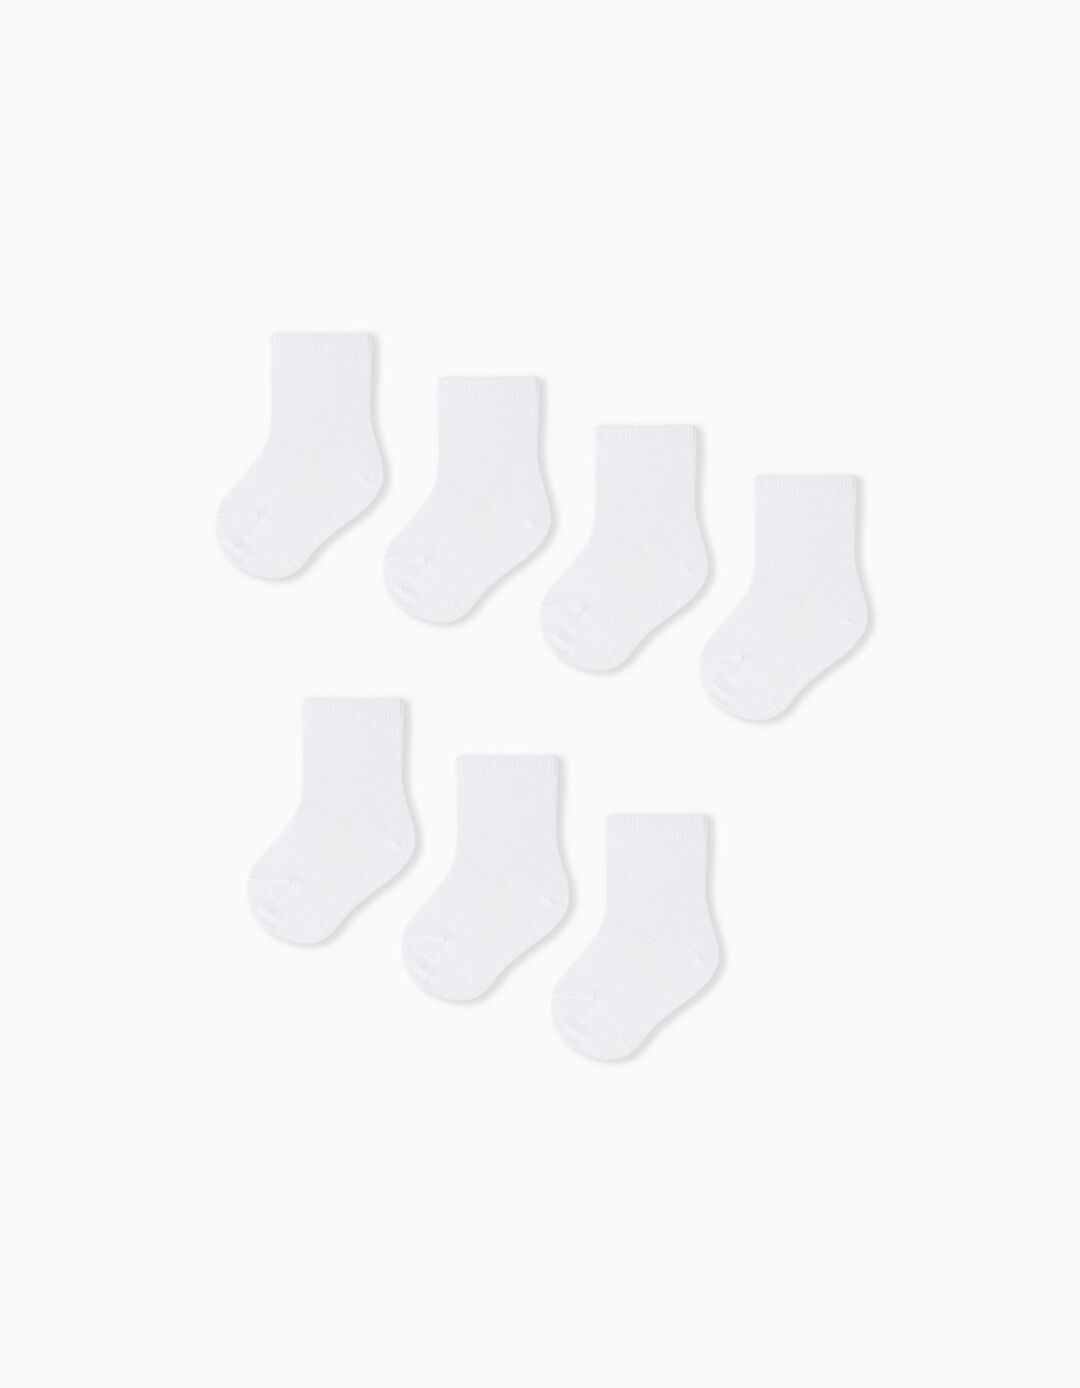 7 Pairs of Socks Pack, Baby Girls, White